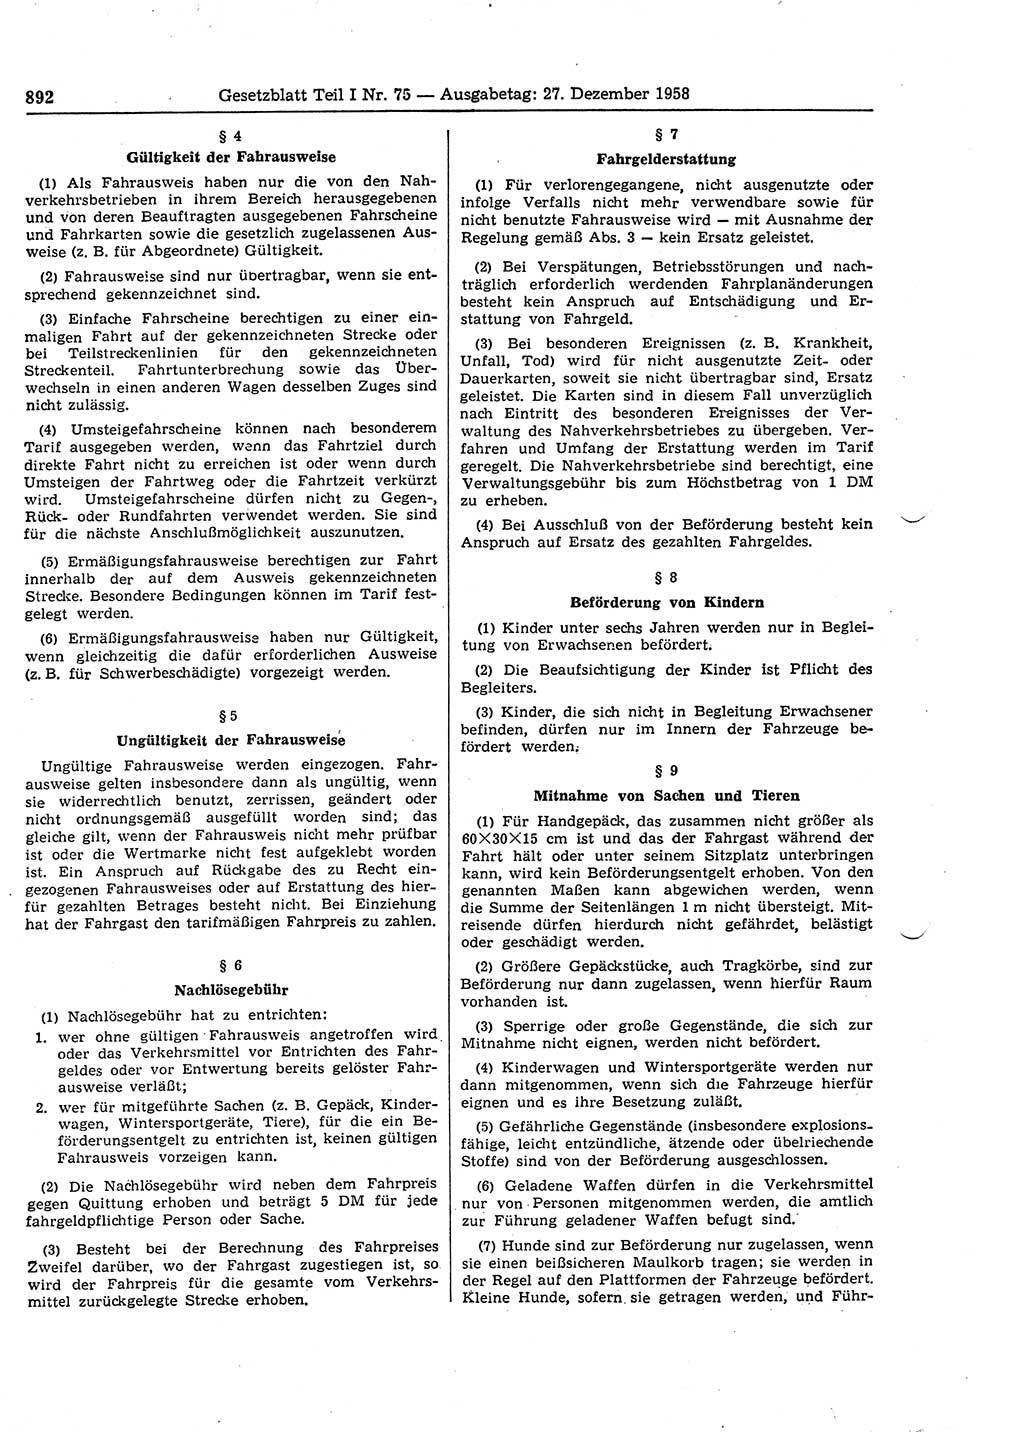 Gesetzblatt (GBl.) der Deutschen Demokratischen Republik (DDR) Teil Ⅰ 1958, Seite 892 (GBl. DDR Ⅰ 1958, S. 892)